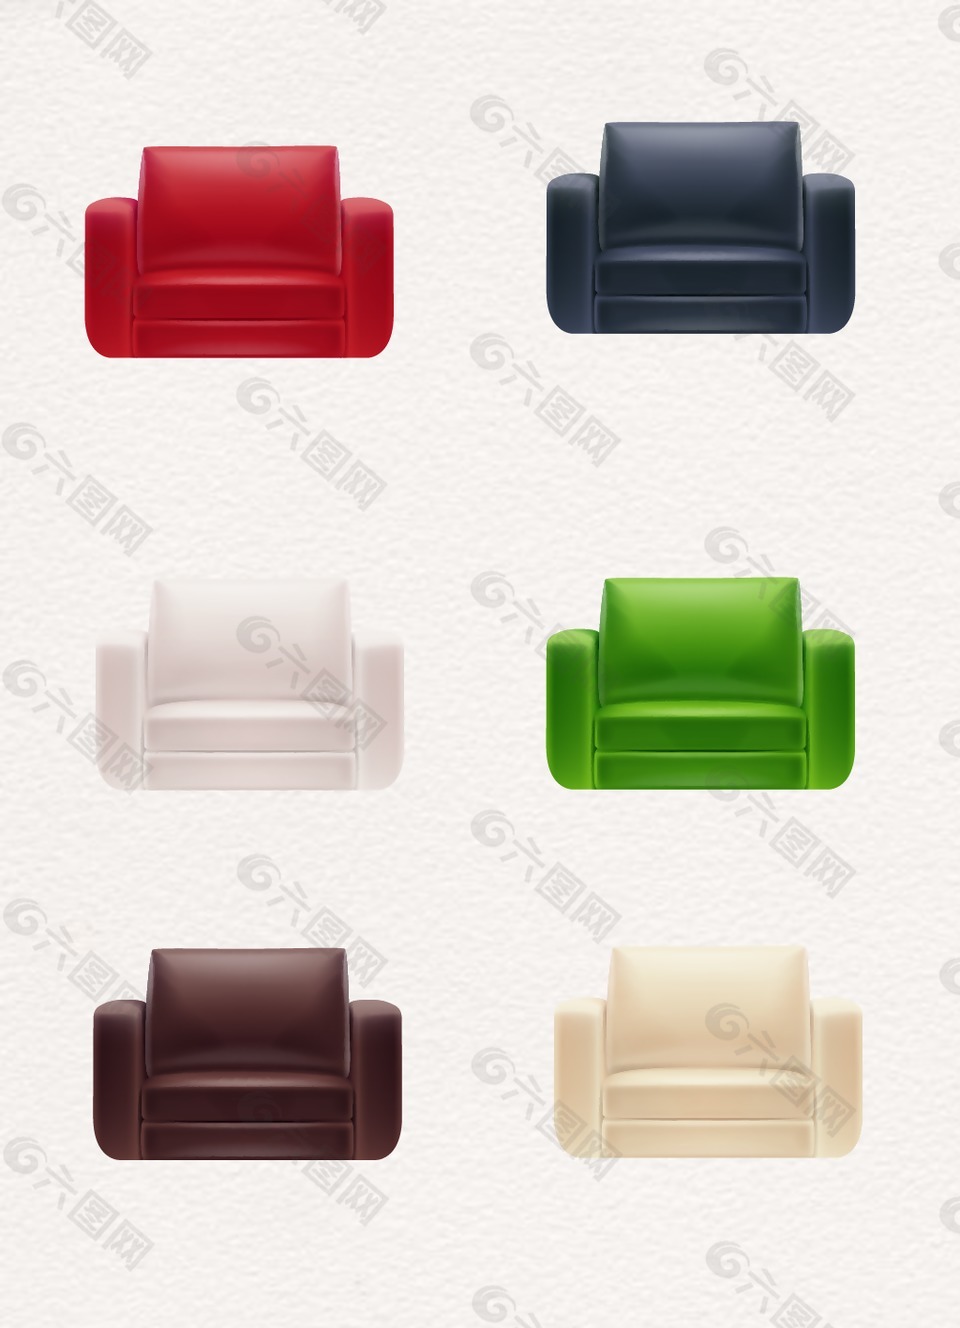 彩色简约设计沙发